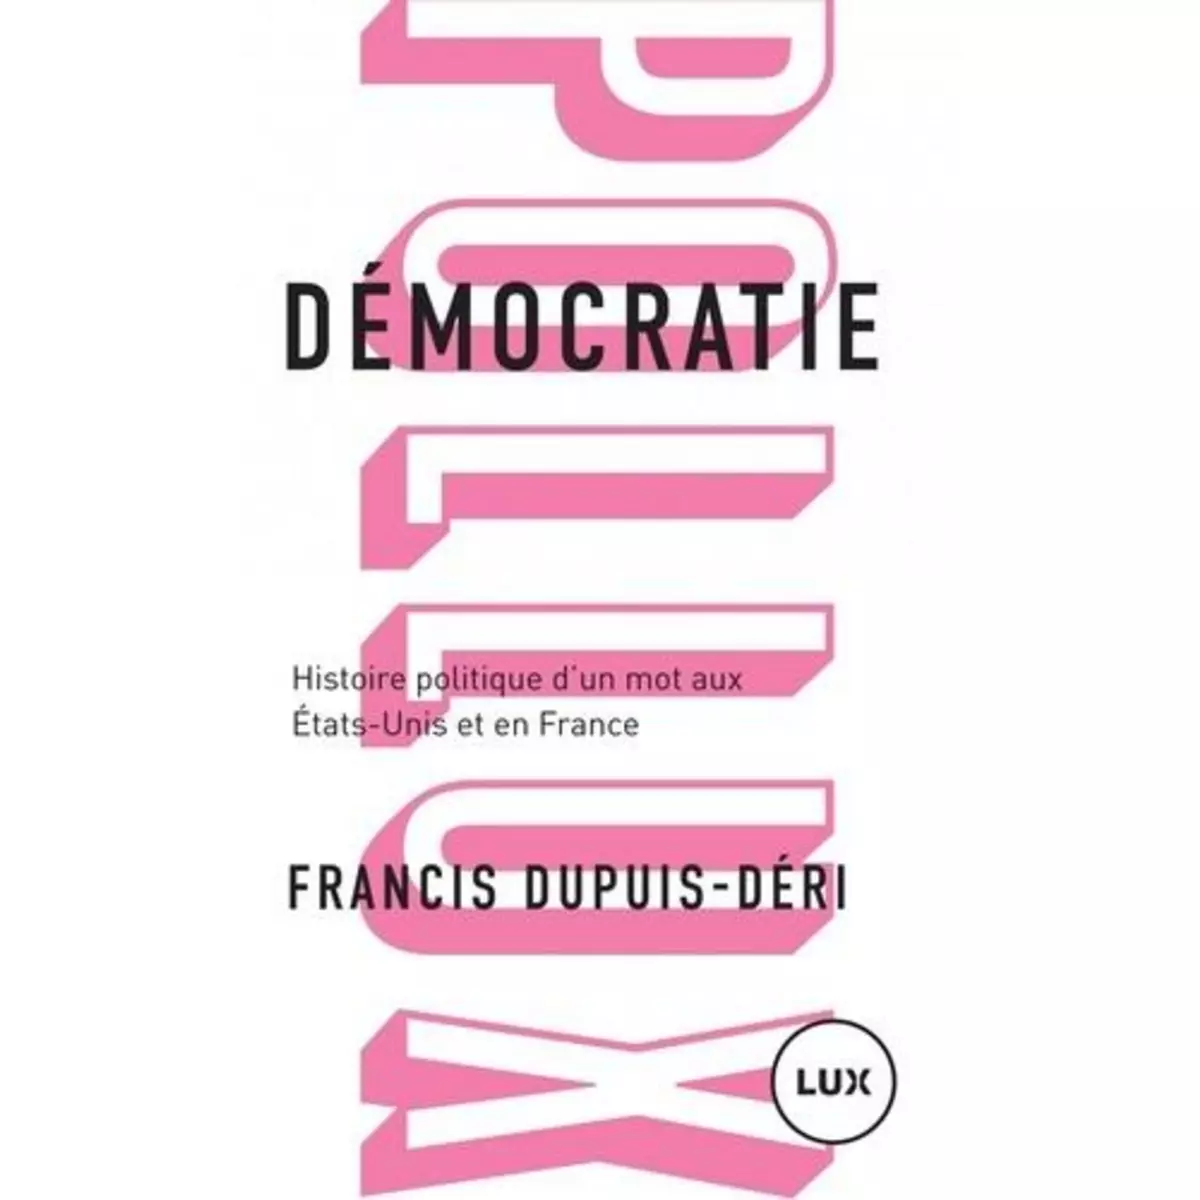  DEMOCRATIE. HISTOIRE POLITIQUE D'UN MOT AUX ETATS-UNIS ET EN FRANCE, Dupuis-Déri Francis